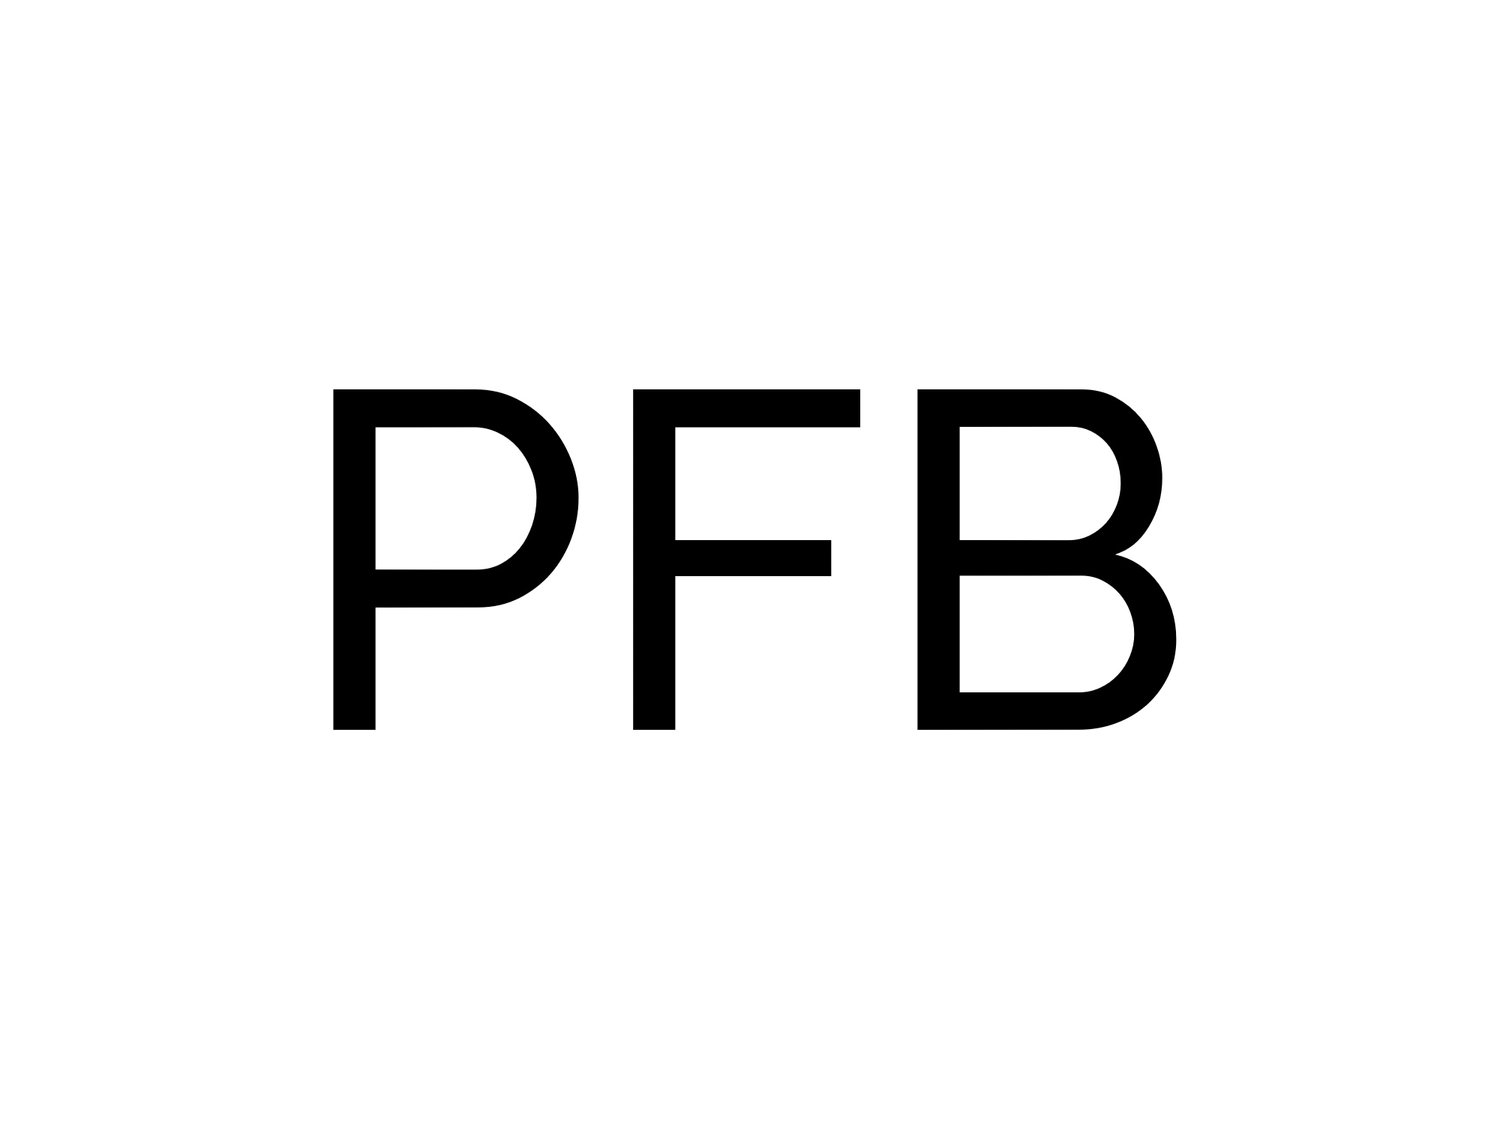 PreciseFB, LLC | Urban Digital Media